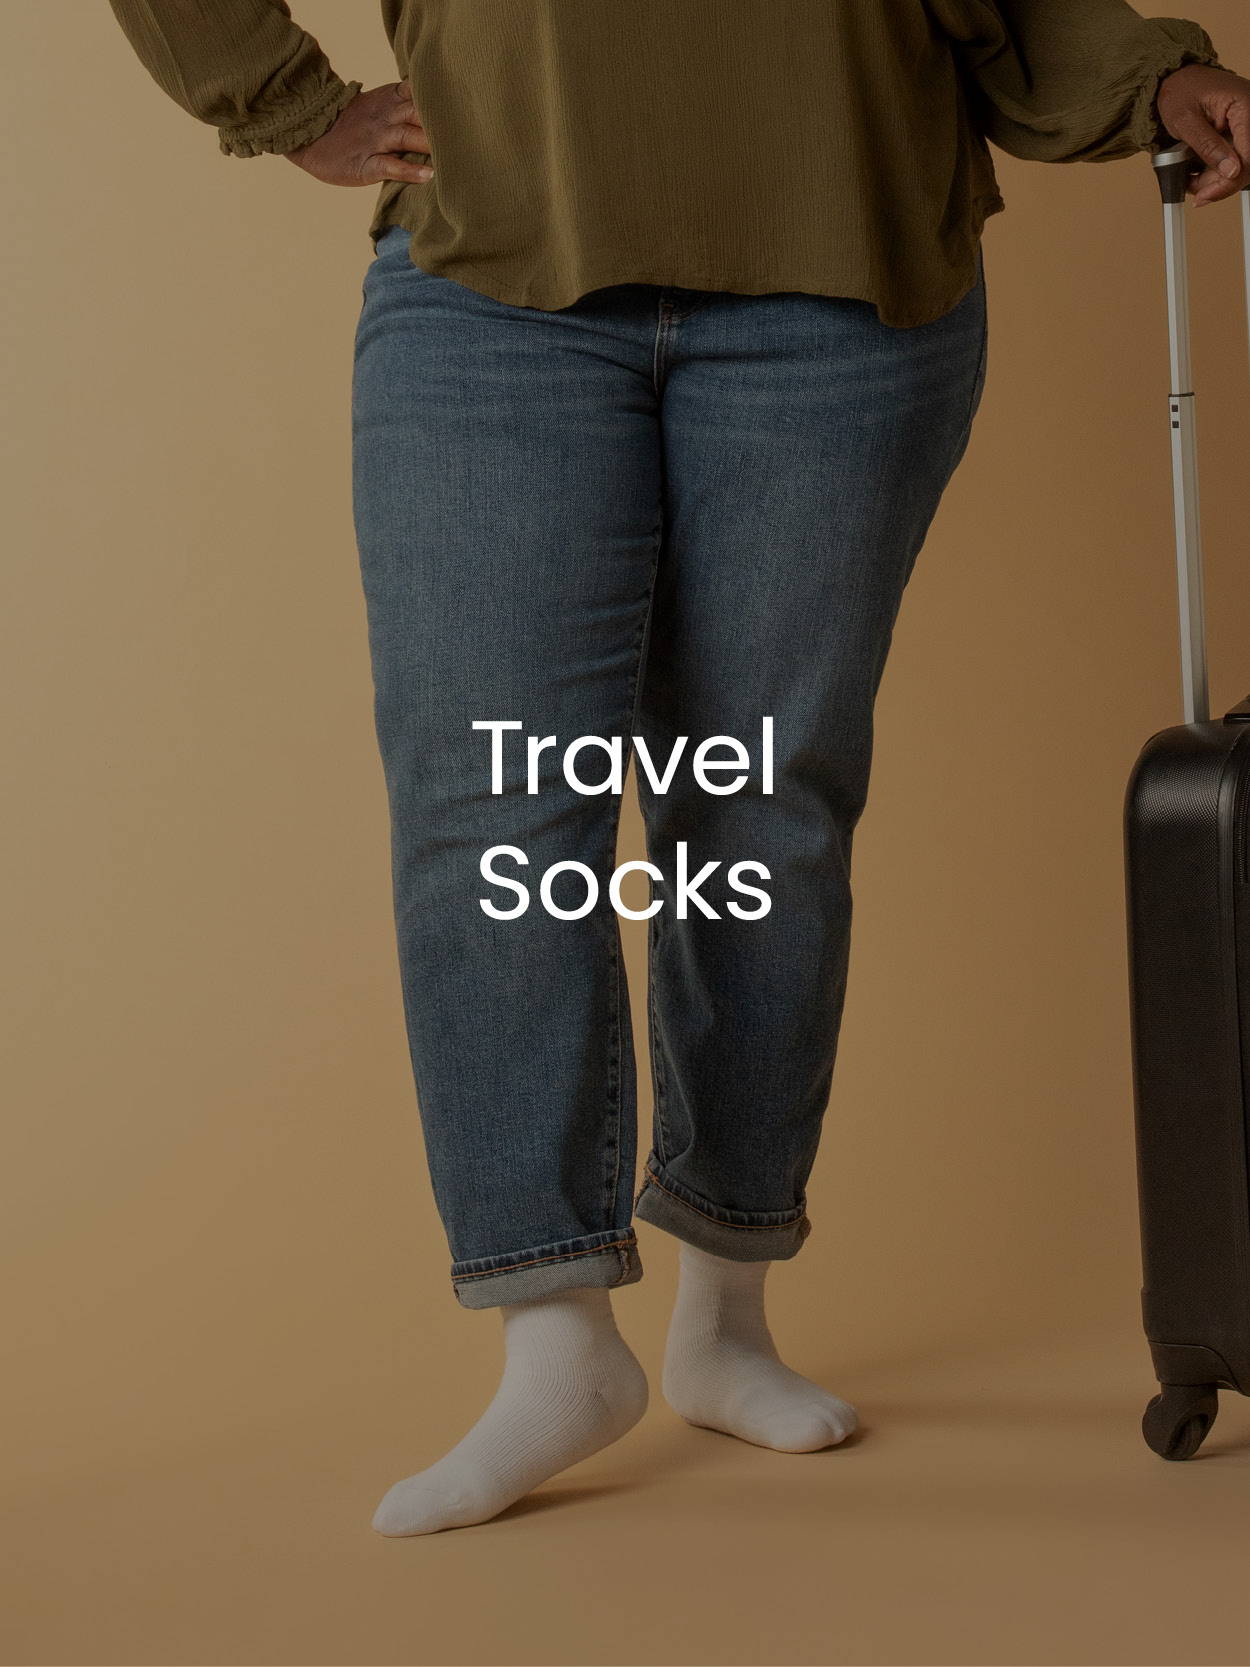 Travel Socks